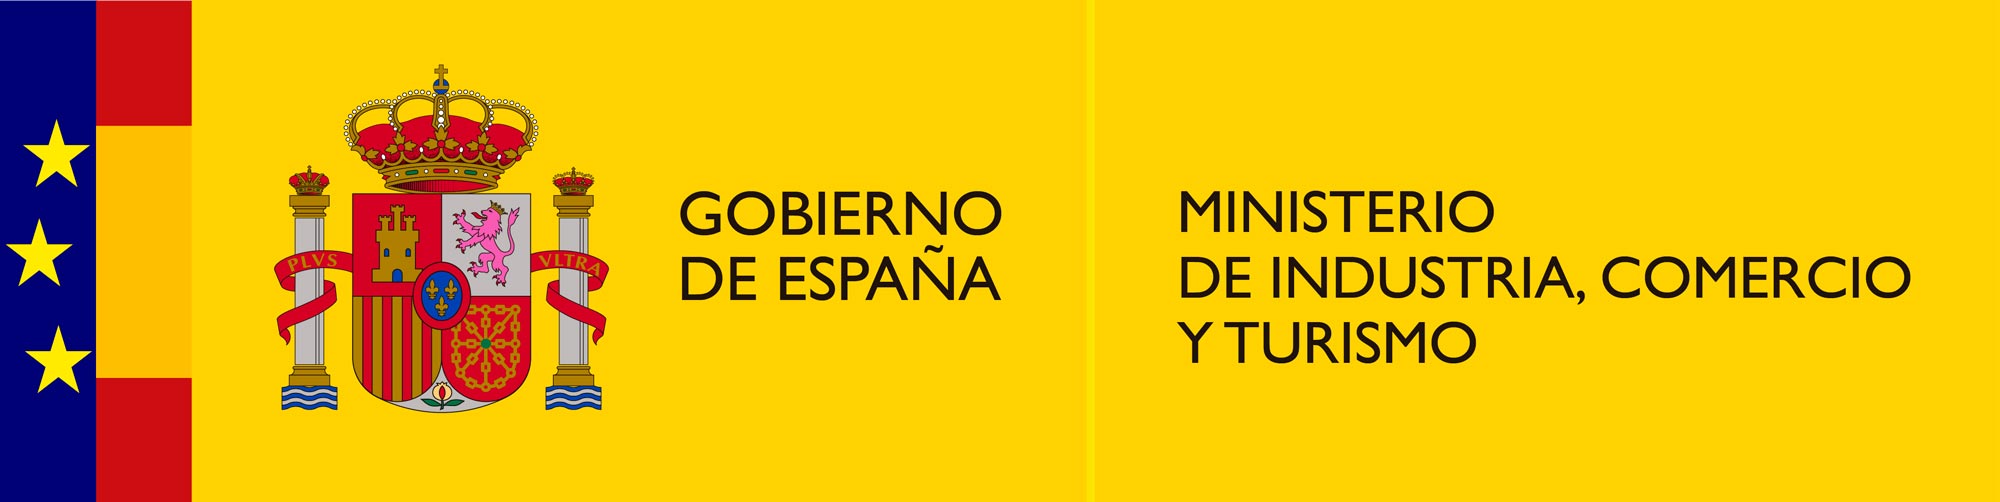 Logotipo del Ministerio de Industria, Comercio y Turismo del Gobierno de España